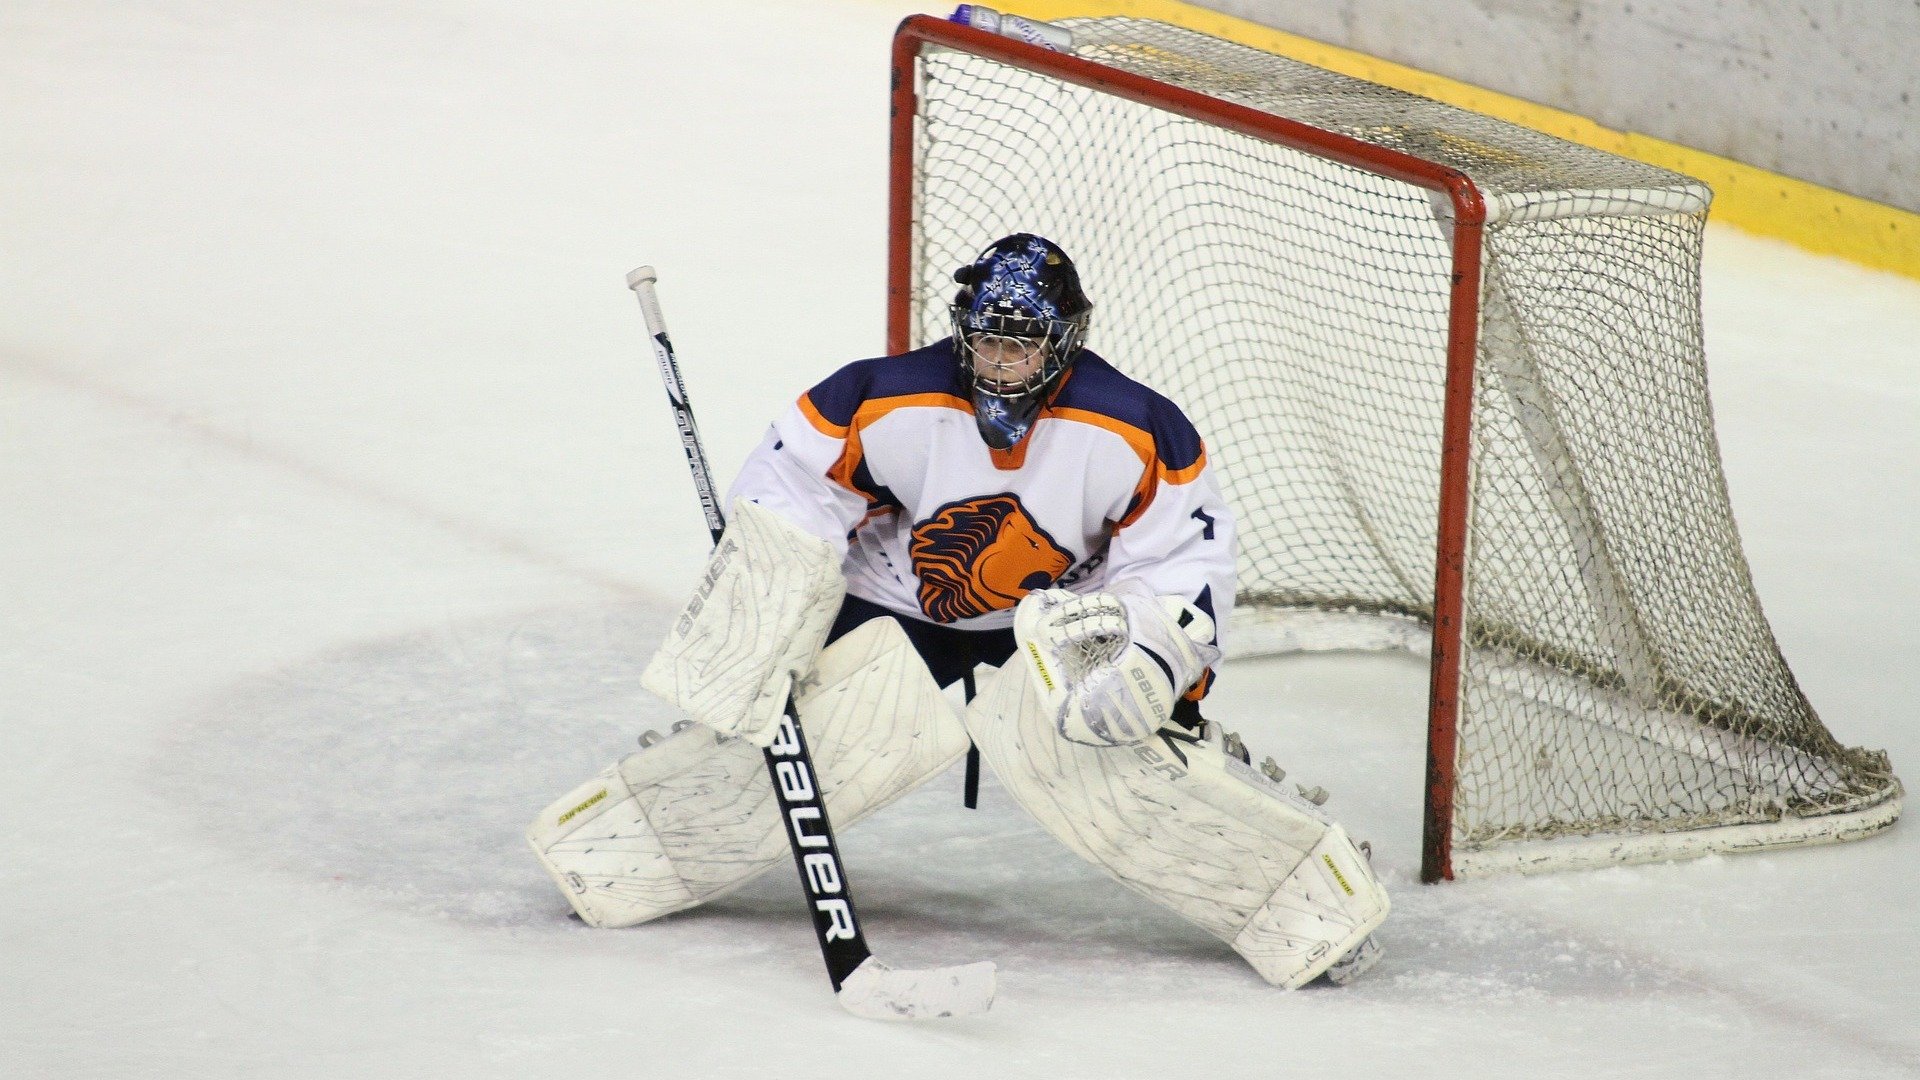 An ice hockey goalie